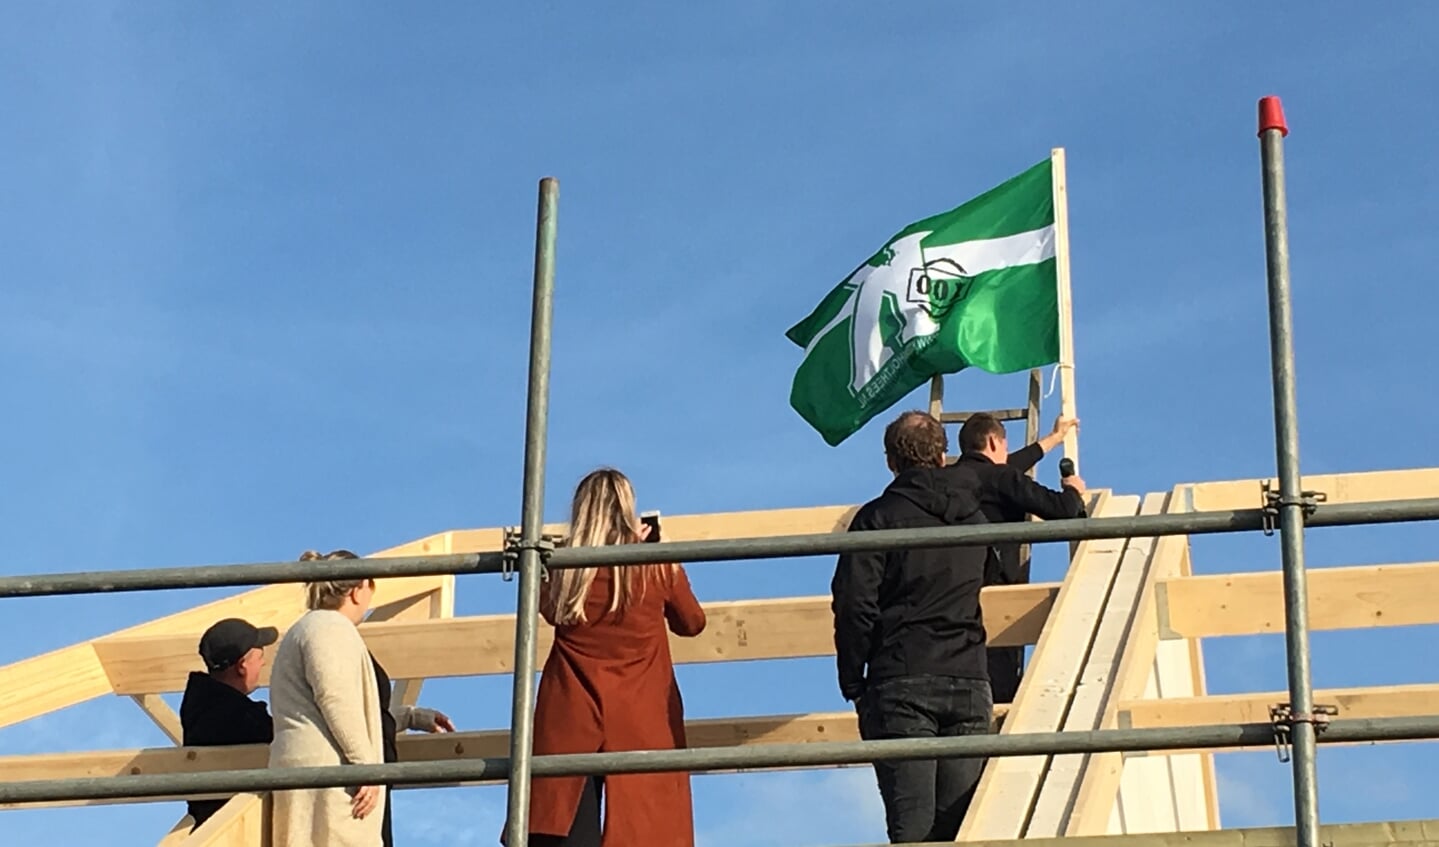 Nieuwe bewoners plantten de vlag op het hoogste punt.